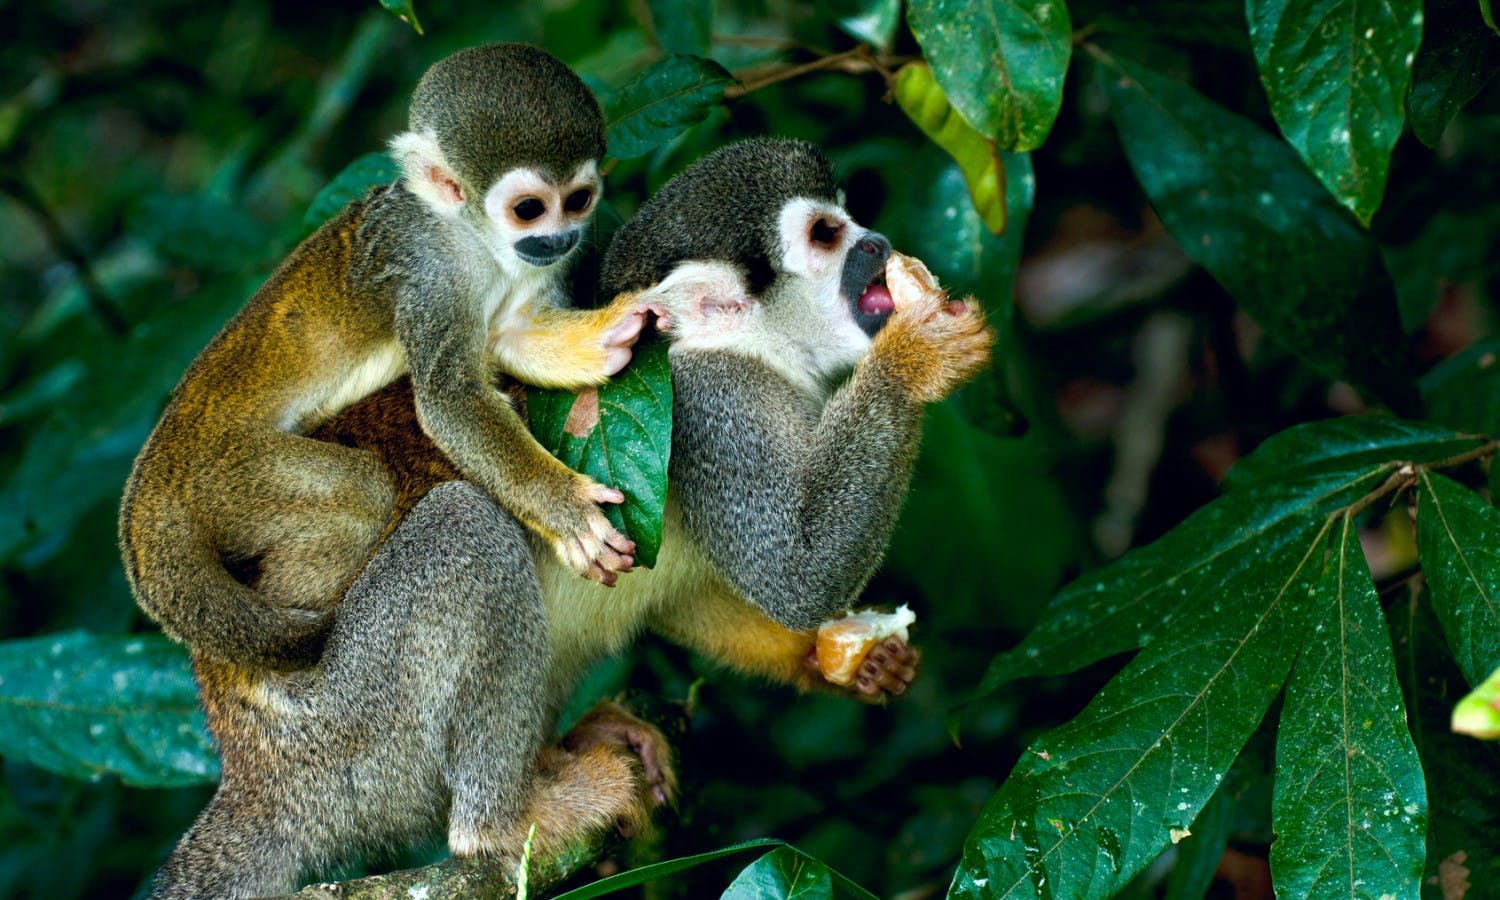 Chipmunks and monkeys tropical forest Brazil.jpg